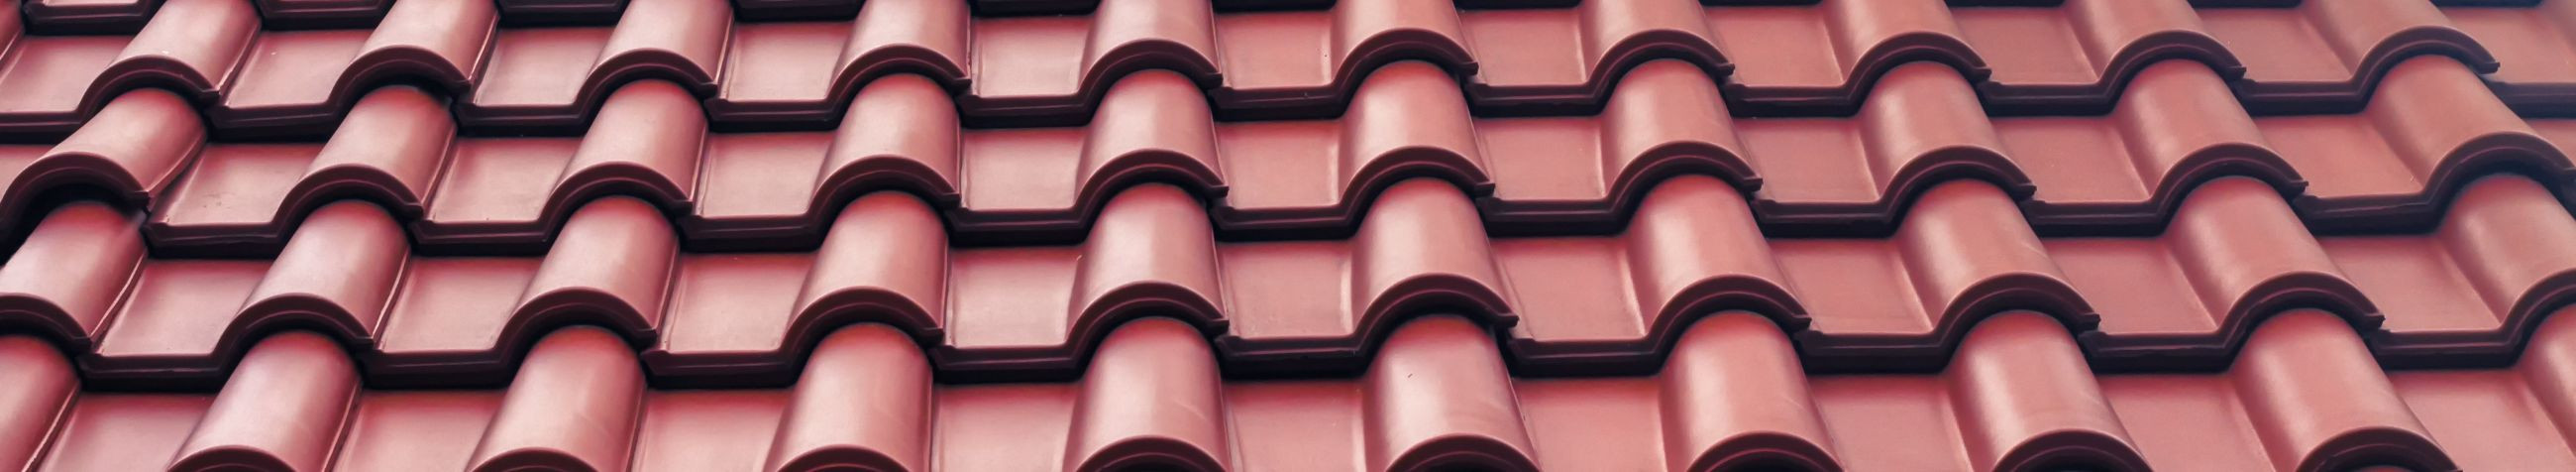 ARPER EHITUS OÜ tegeleb Lõuna-Eestis ja on spetsialiseerunud kivitöödele, katusetöödele ning renoveerimistöödele, pakkudes klientidele kvaliteetseid ehituslahendusi, mis muudavad kodud stiilseks ja vastupidavaks.